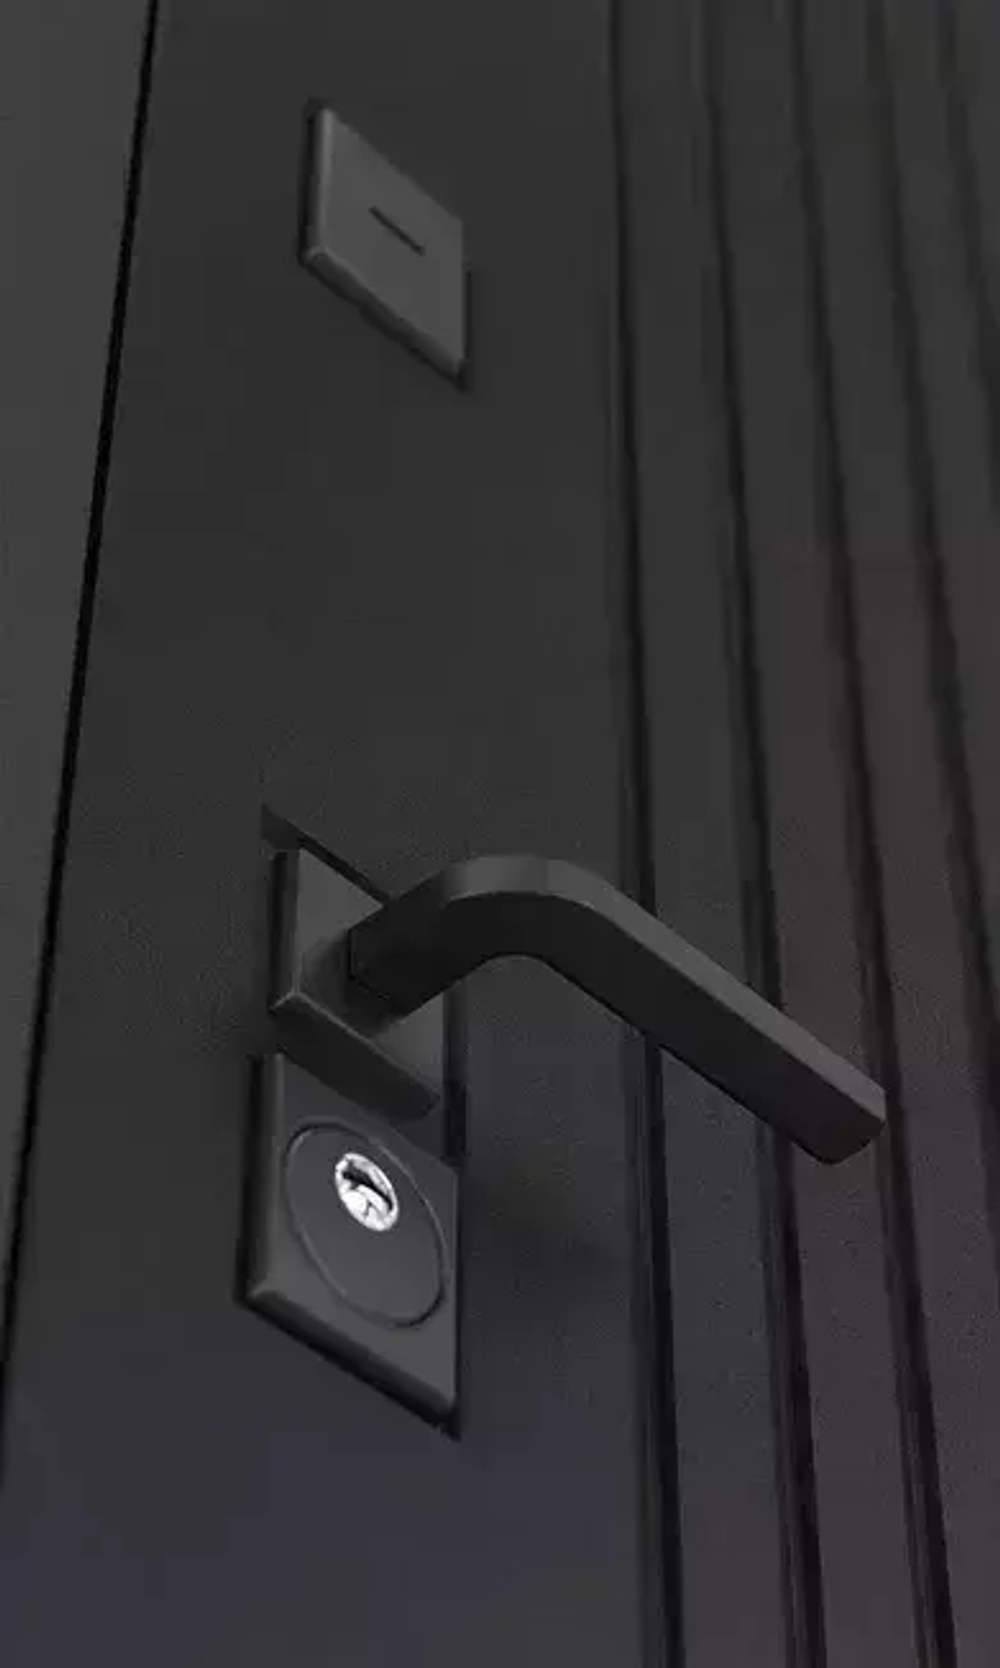 Входная металлическая дверь Бункер HIT Хит B-06 черный кварц / ФЛ-609 Белый софт